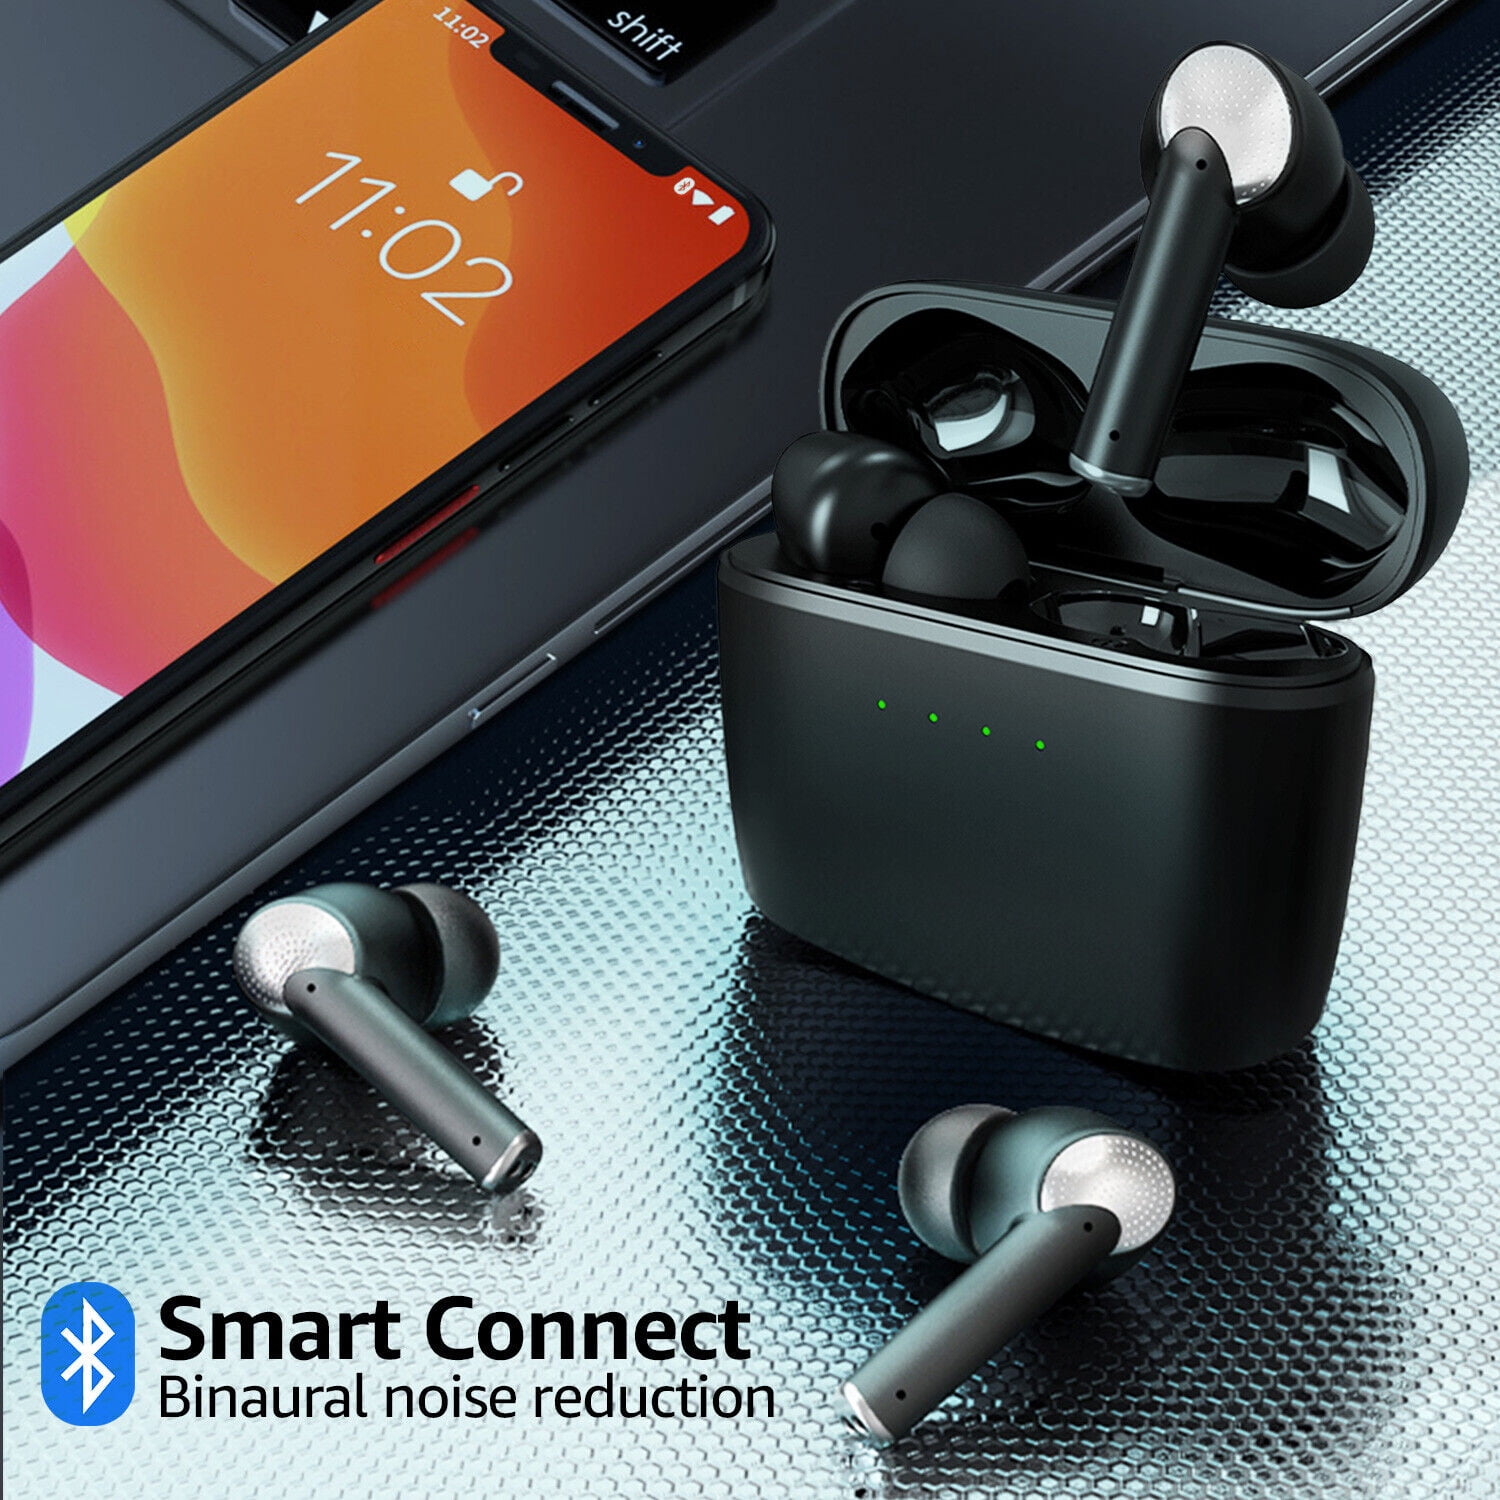 Wireless Bluetooth Earbuds Headphones IPX7 Waterproof: Tai nghe không dây Bluetooth chống nước IPX7 sẽ là đồng hành tuyệt vời của bạn trong mọi hoạt động giải trí. Mang lại âm thanh sống động và chất lượng cùng thiết kế nhỏ gọn và thuận tiện, tai nghe này thực sự là một điểm nhấn trong bất cứ hoạt động nào. Xem hình ảnh để tận hưởng trọn vẹn trải nghiệm!